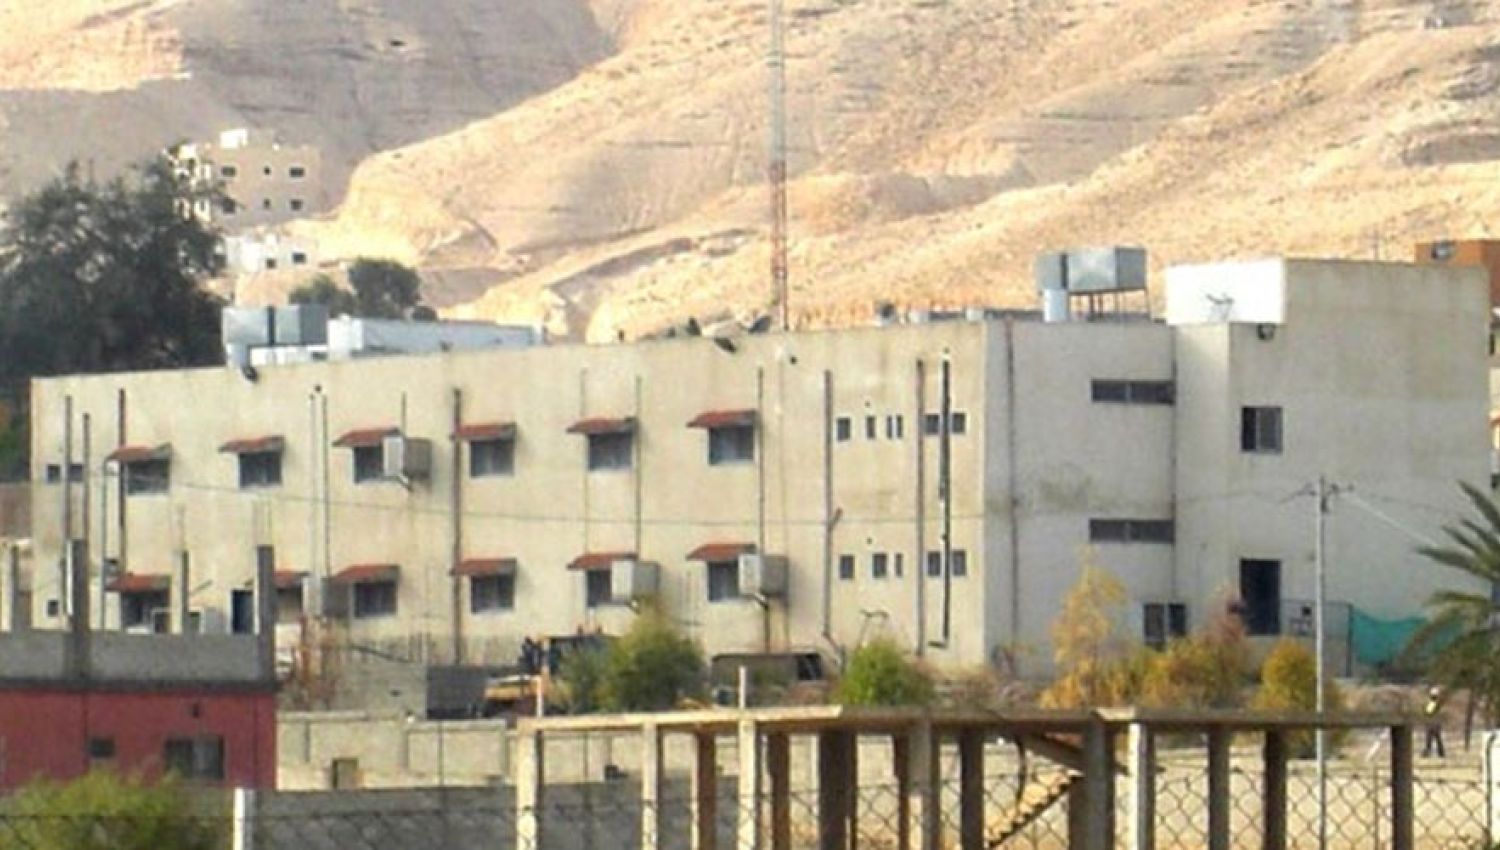 سجن أريحا: سياسة السلطة الفلسطينية الممنهجة لتدمير الأسير نفسياً